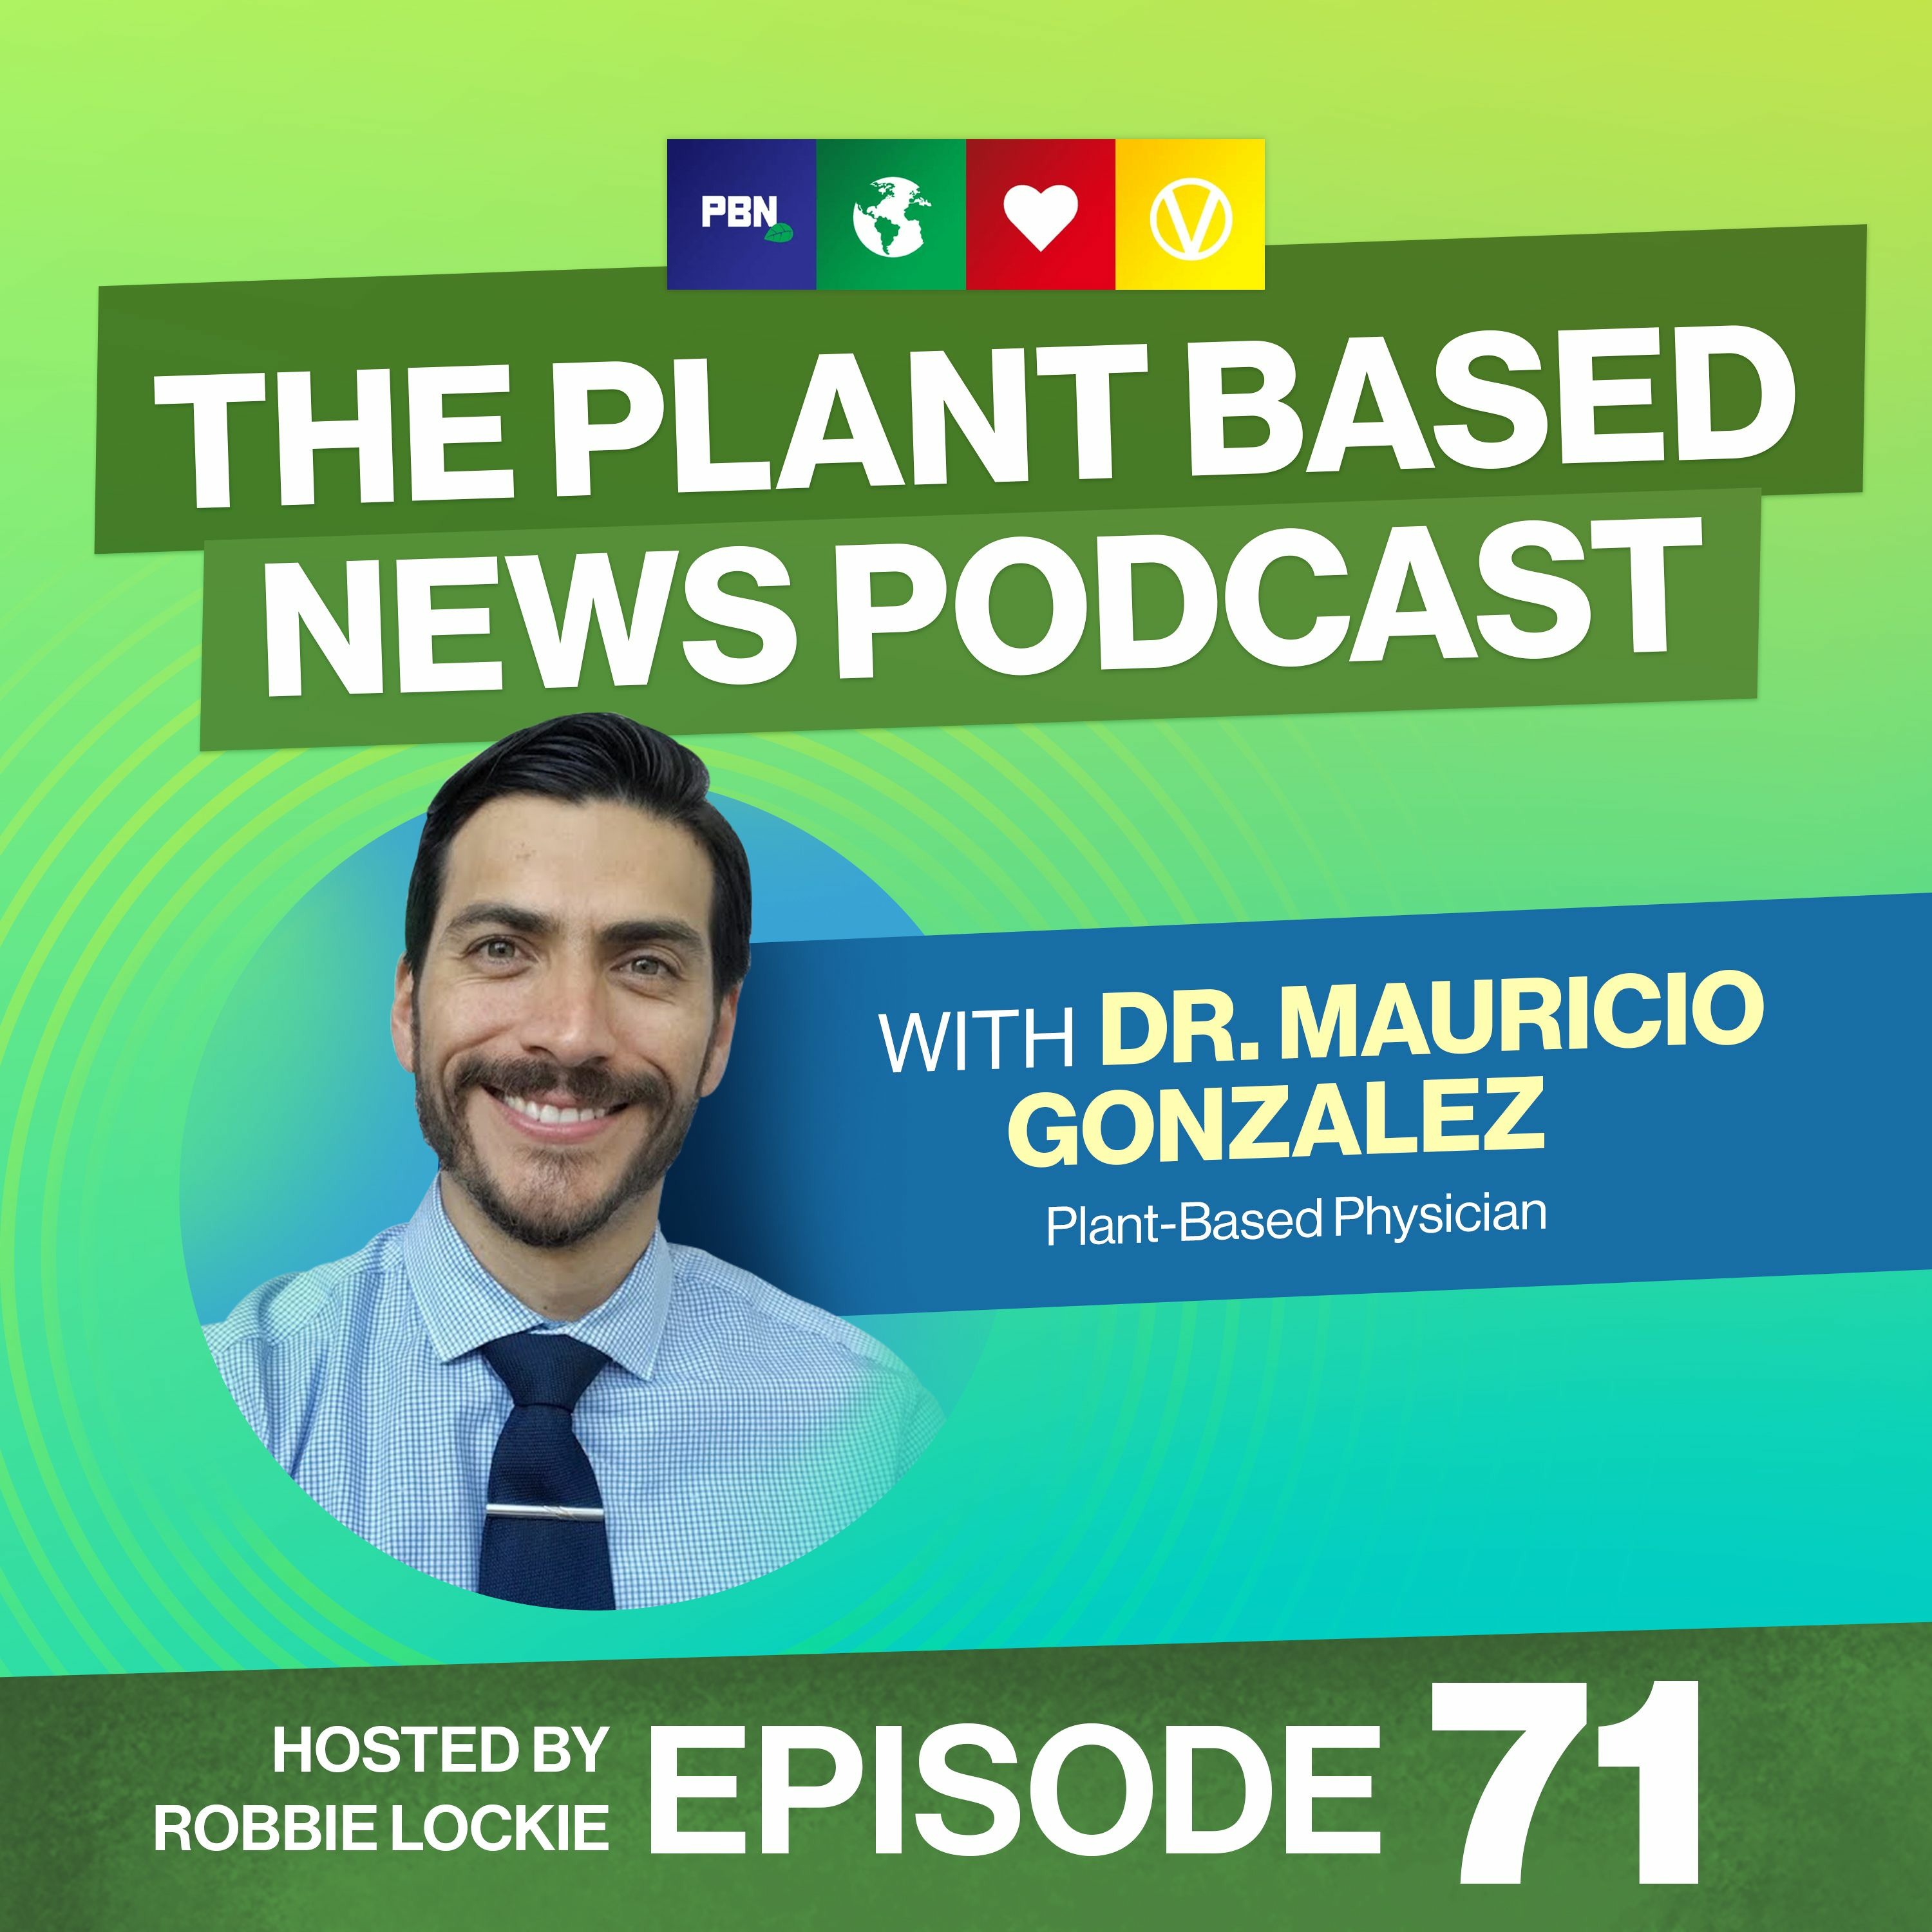 Veganism, Vaccines & Misinformation with Dr. Mauricio Gonzalez Episode 71